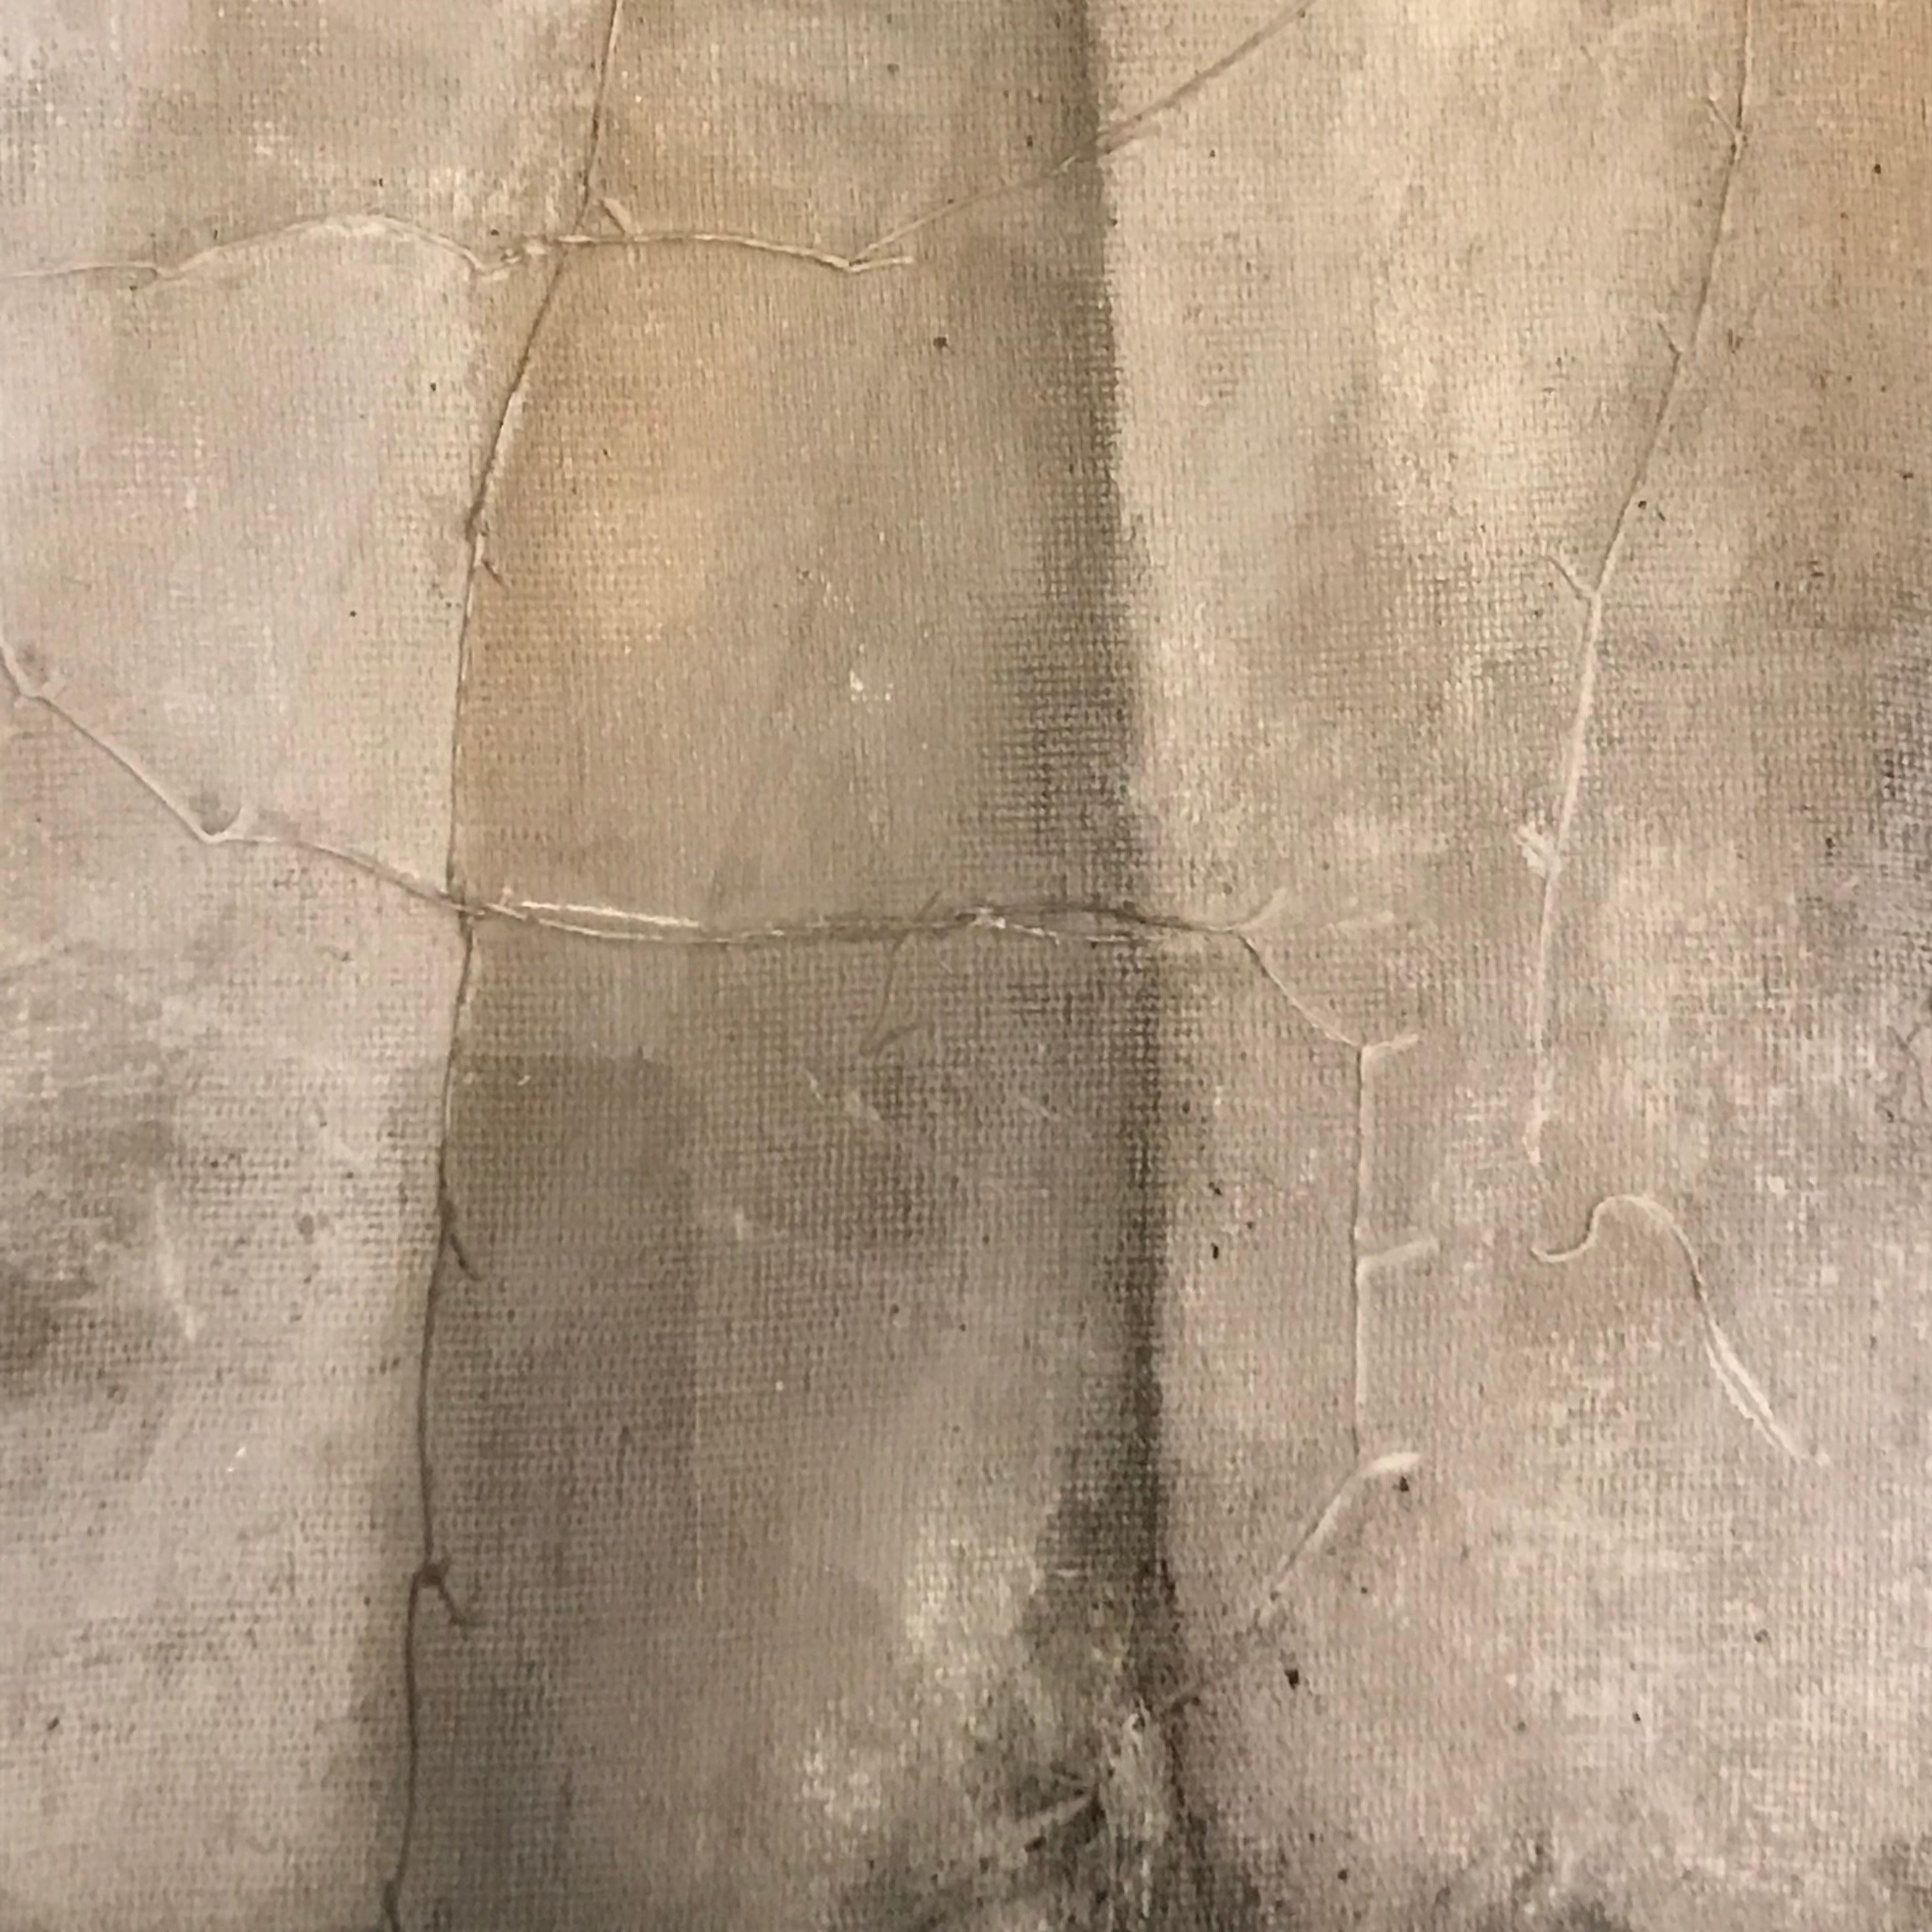 Peinture abstraite contemporaine de l'artiste belge Diane Petry.
La peinture acrylique est en nuances de gris.
L'artiste crée sa propre toile en utilisant des techniques mixtes.
Montage d'archives sur carton musée dans un cadre en aluminium noir